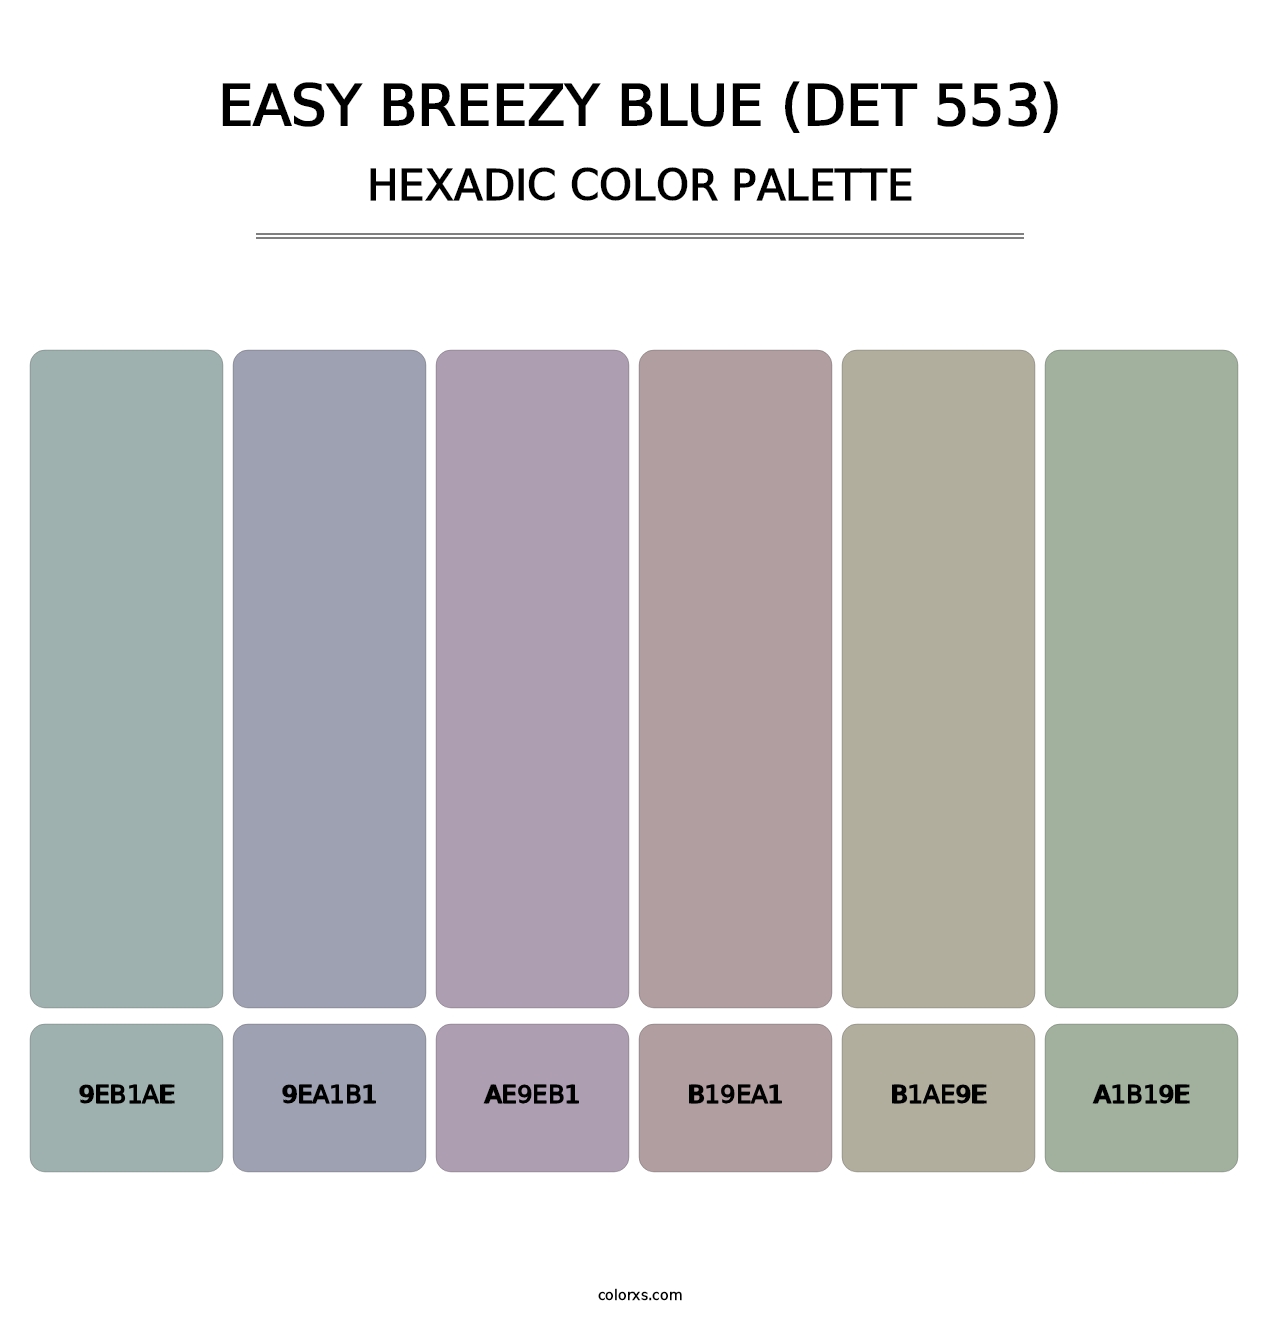 Easy Breezy Blue (DET 553) - Hexadic Color Palette